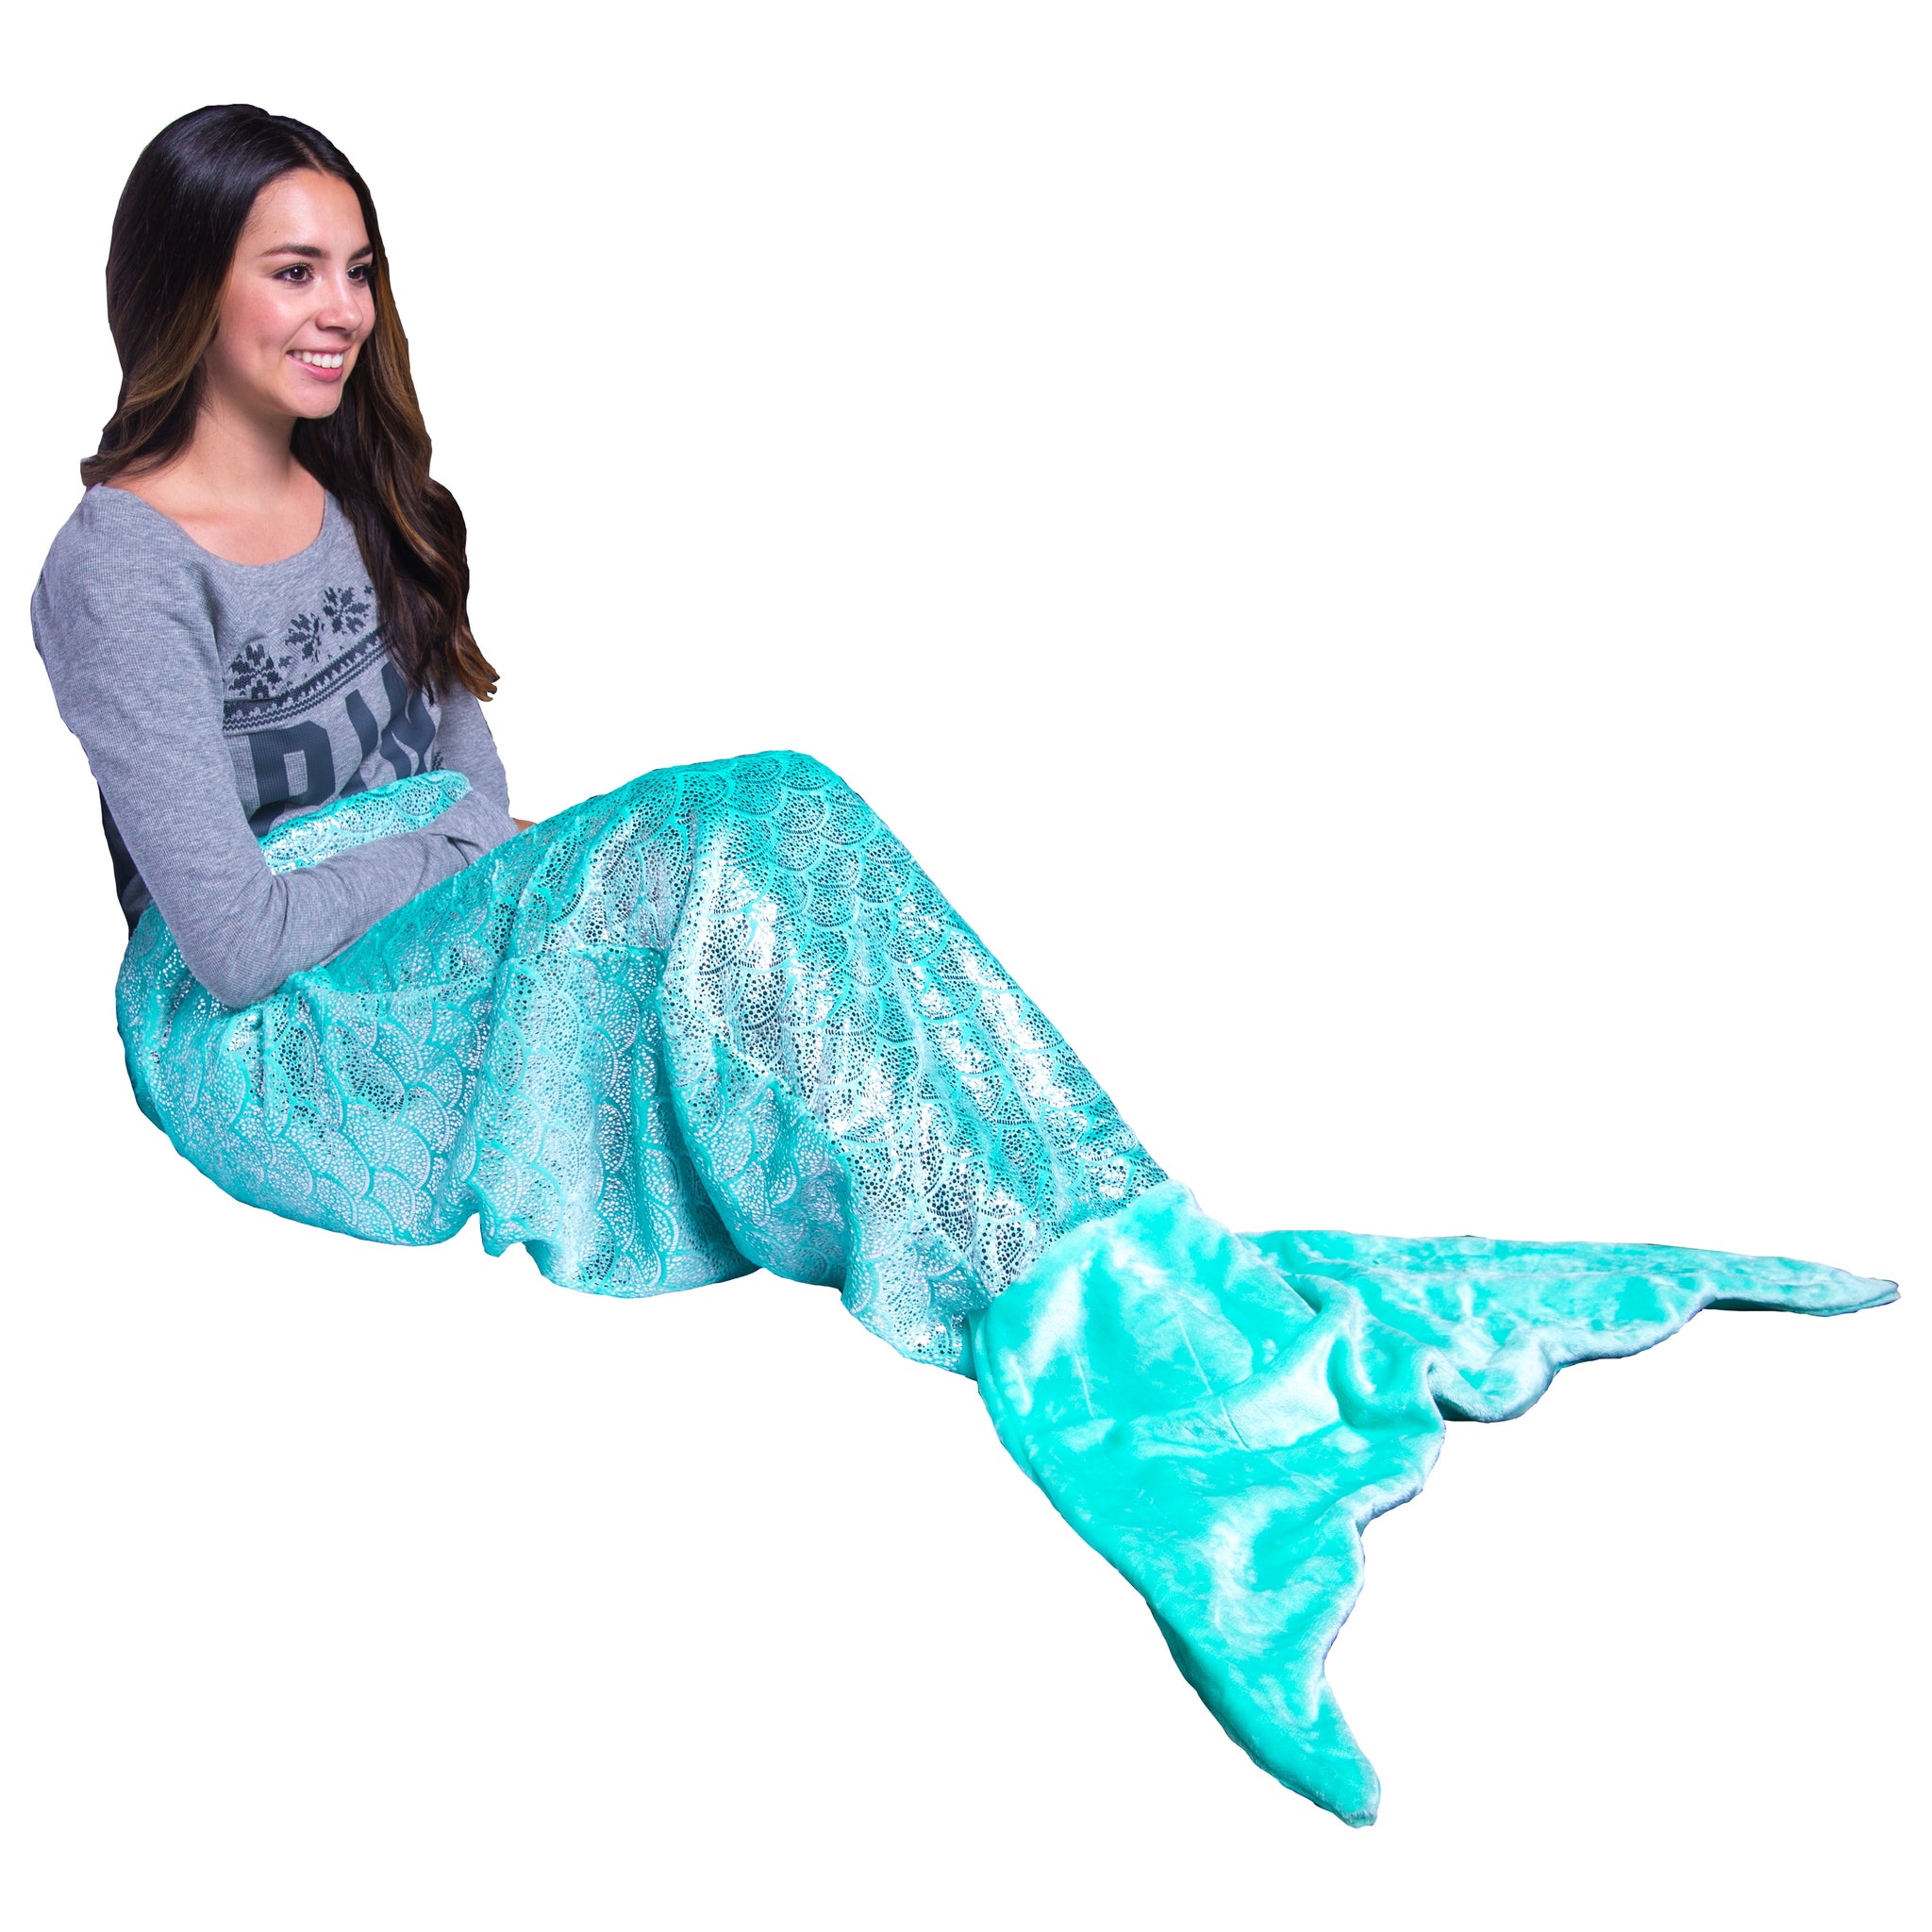 mermaid tail blanket kit